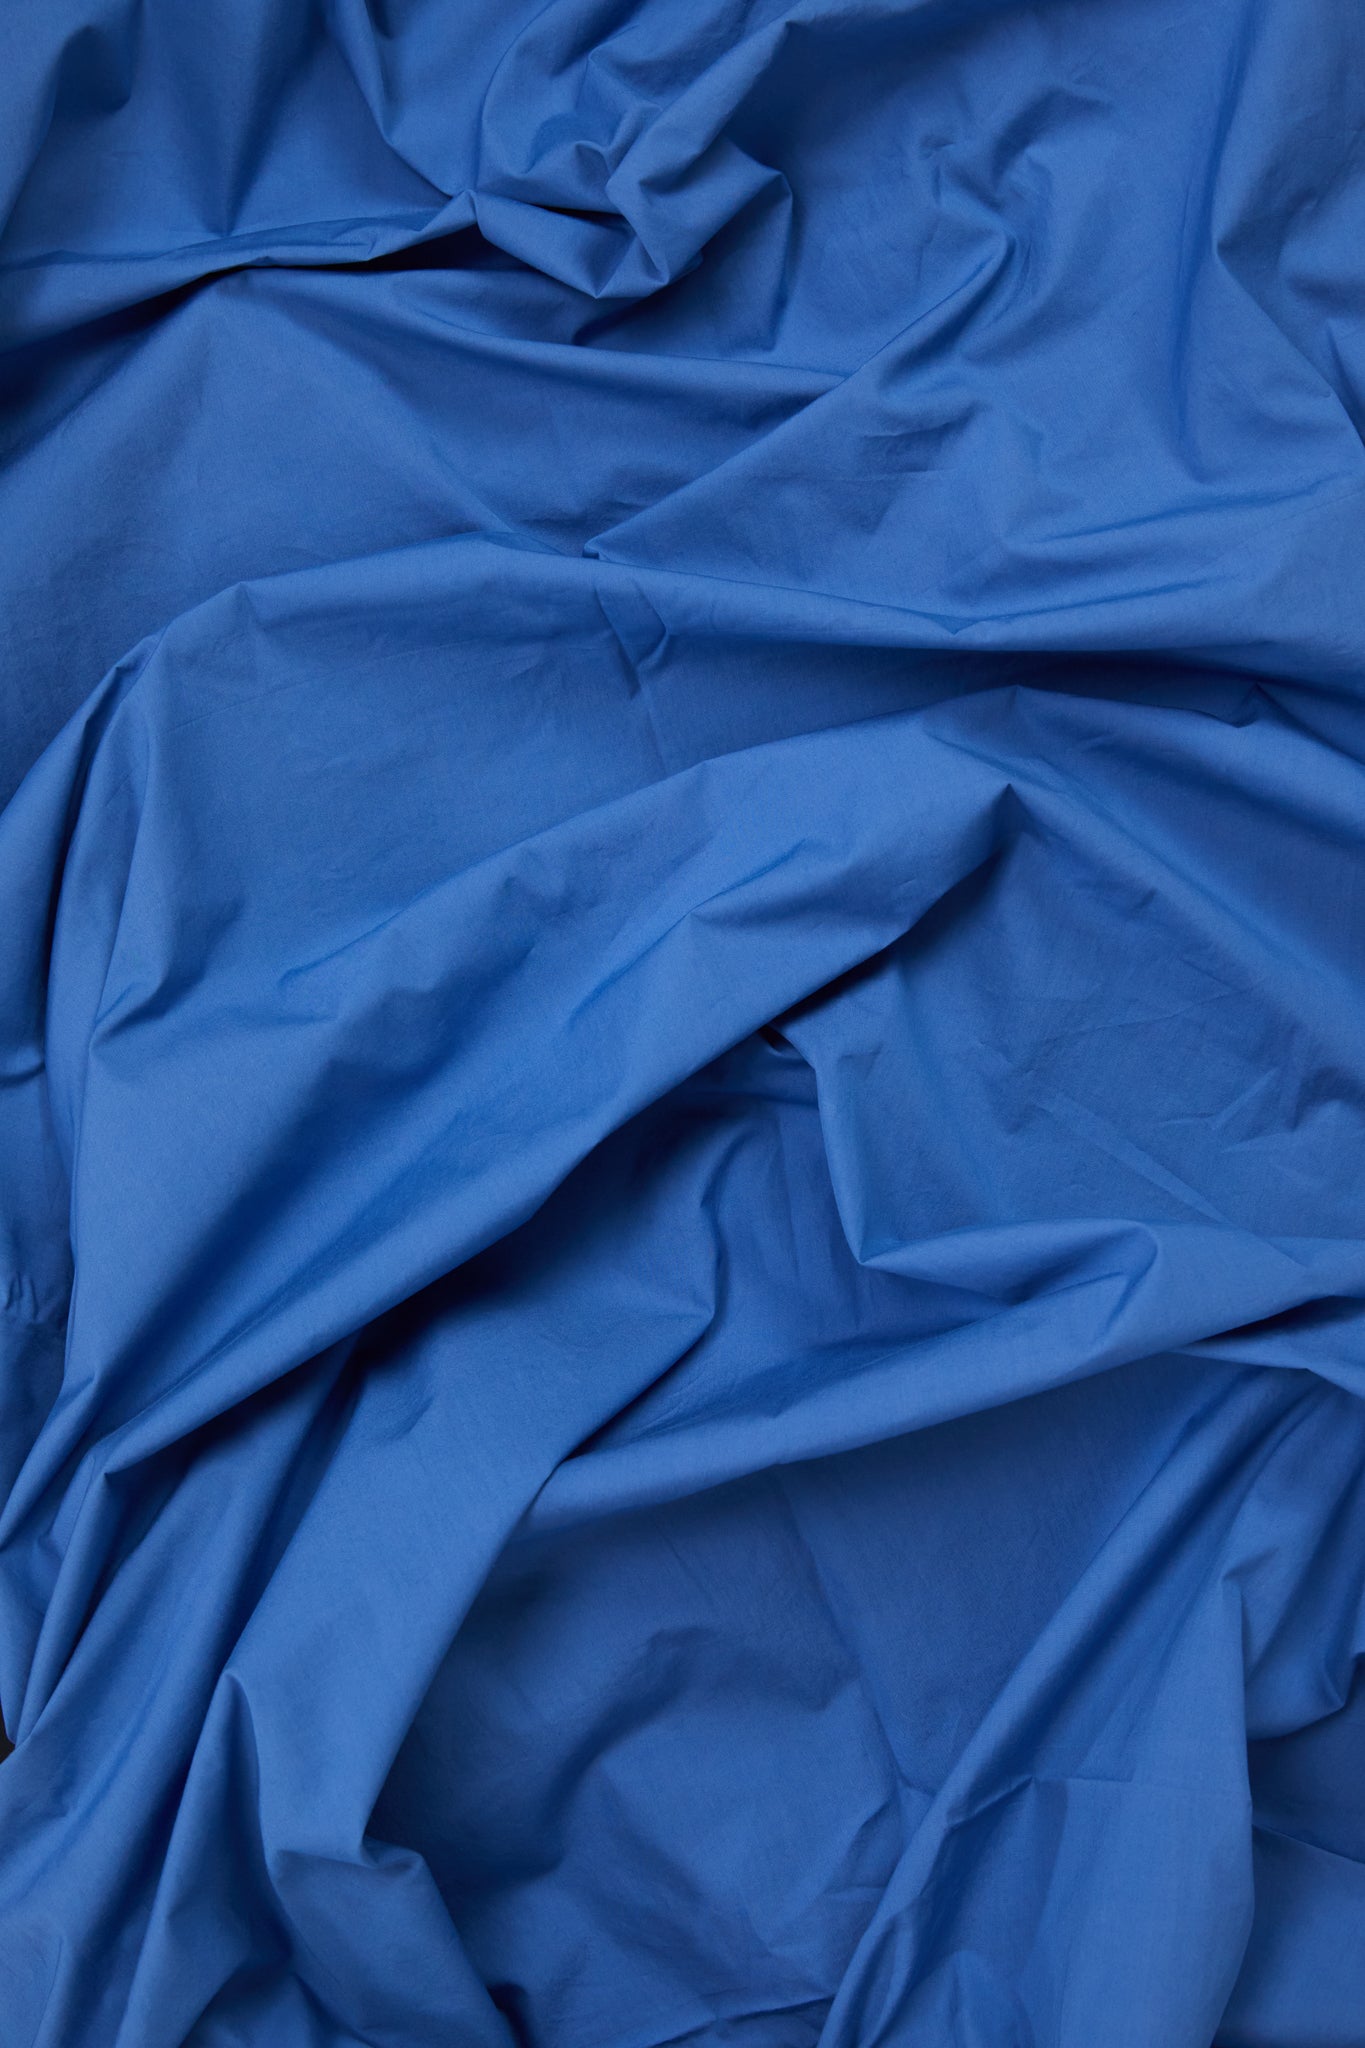 Duvet Cover in Blue Blue